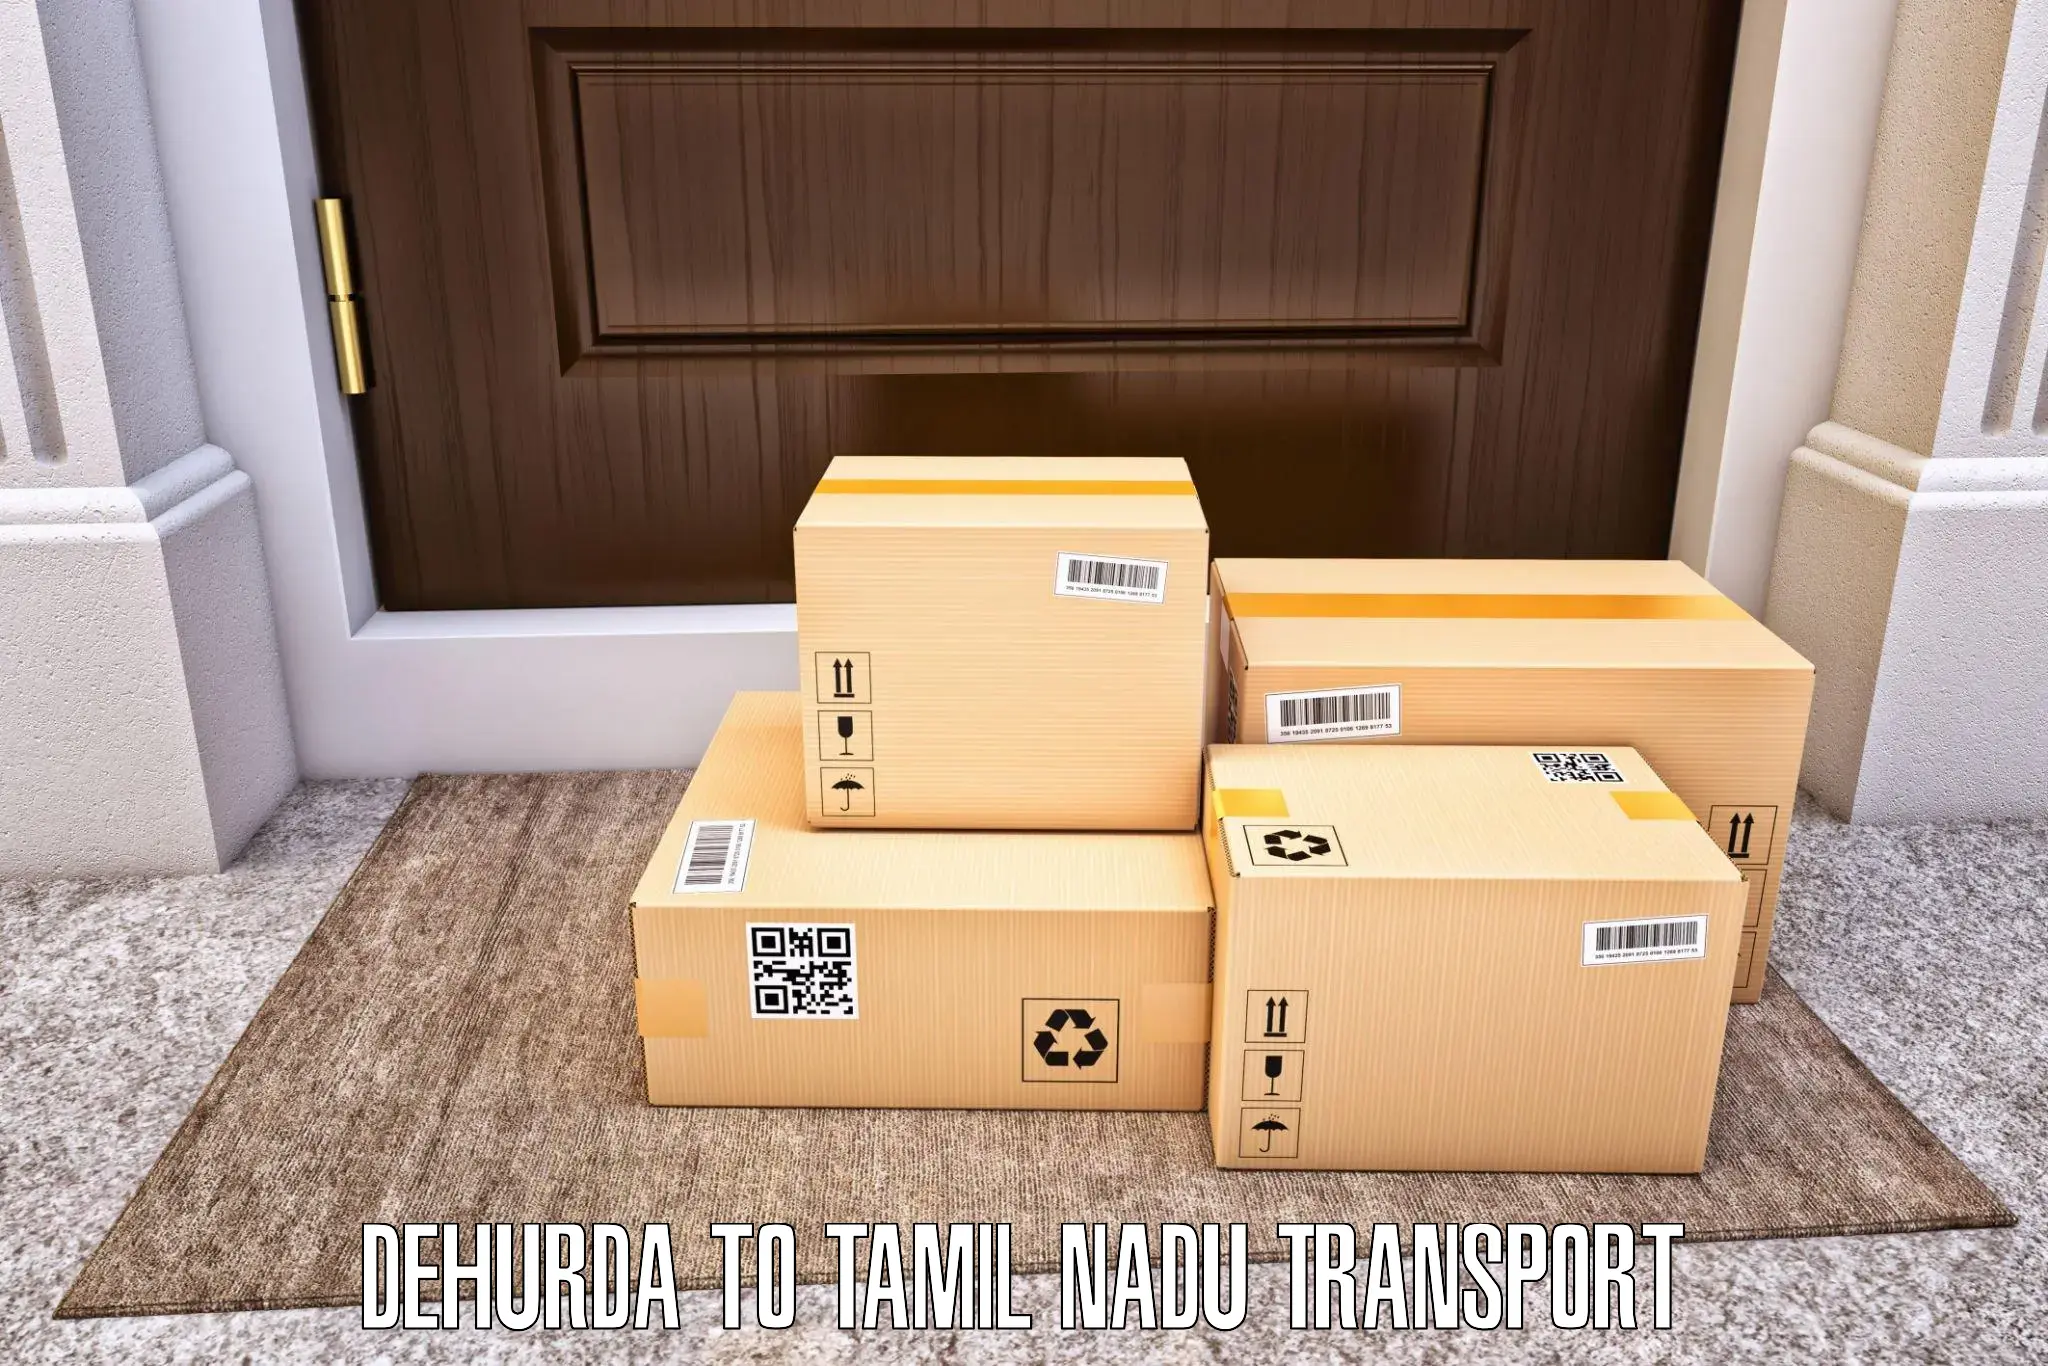 Furniture transport service Dehurda to Sriperumbudur